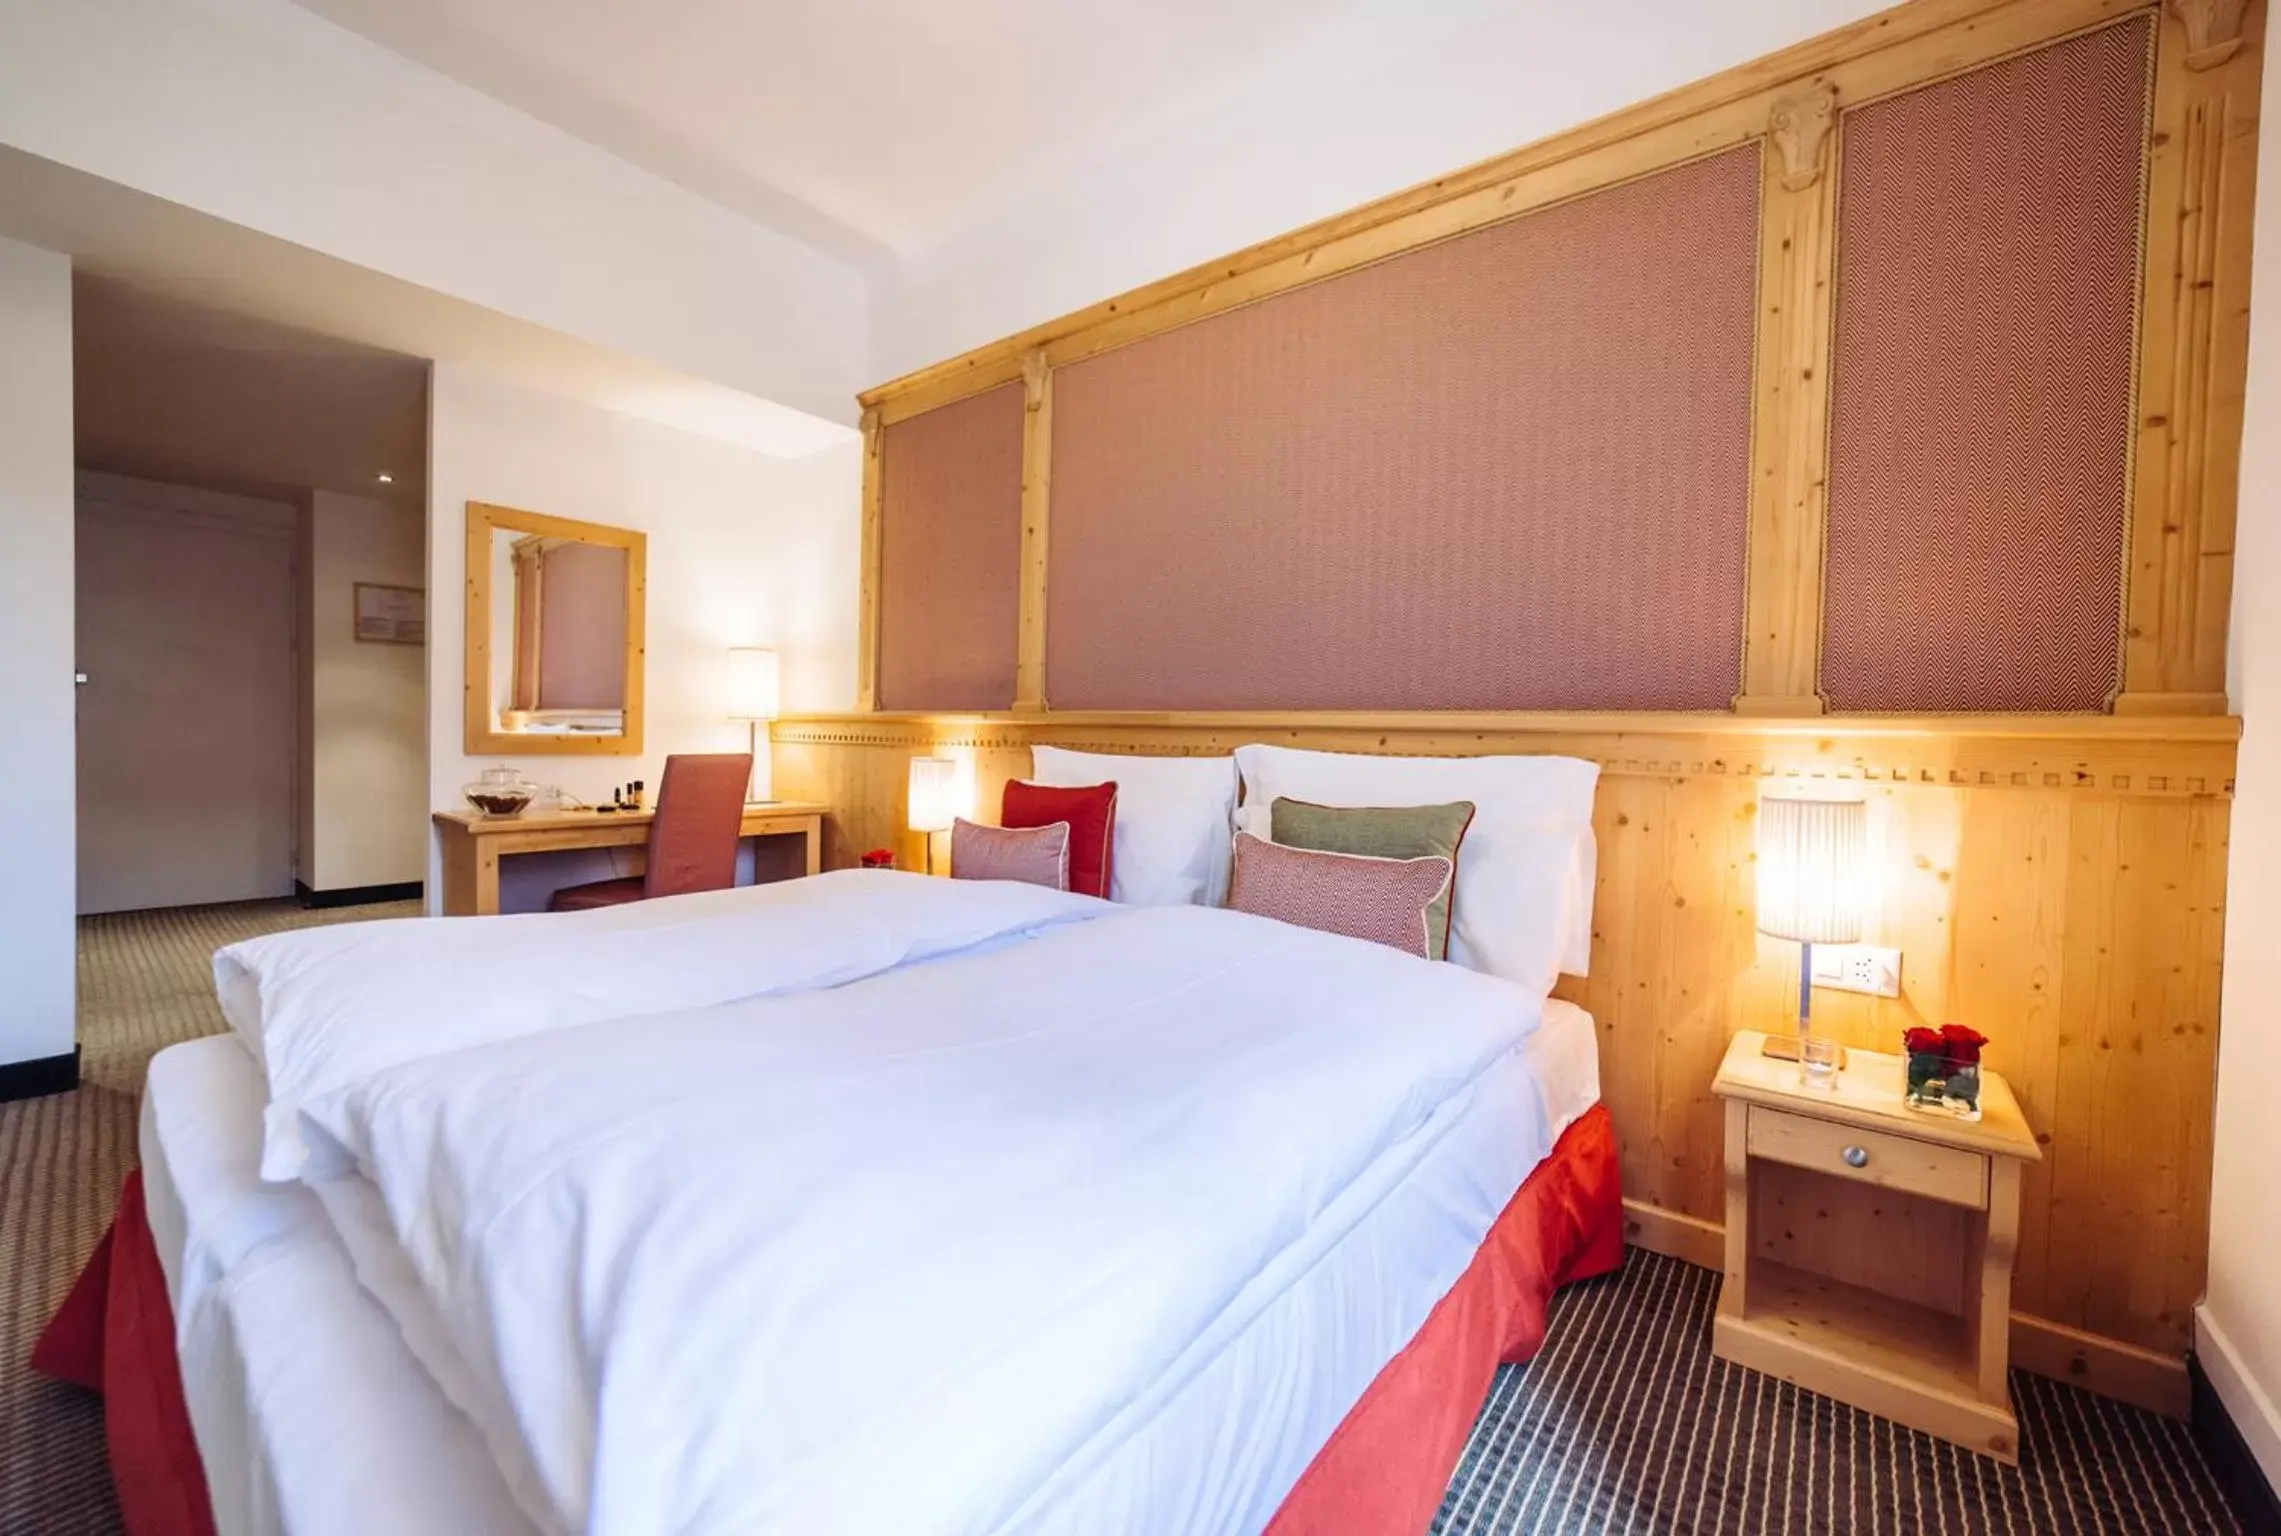 Bedroom, Room Photo in Schloss Hotel & Spa Pontresina